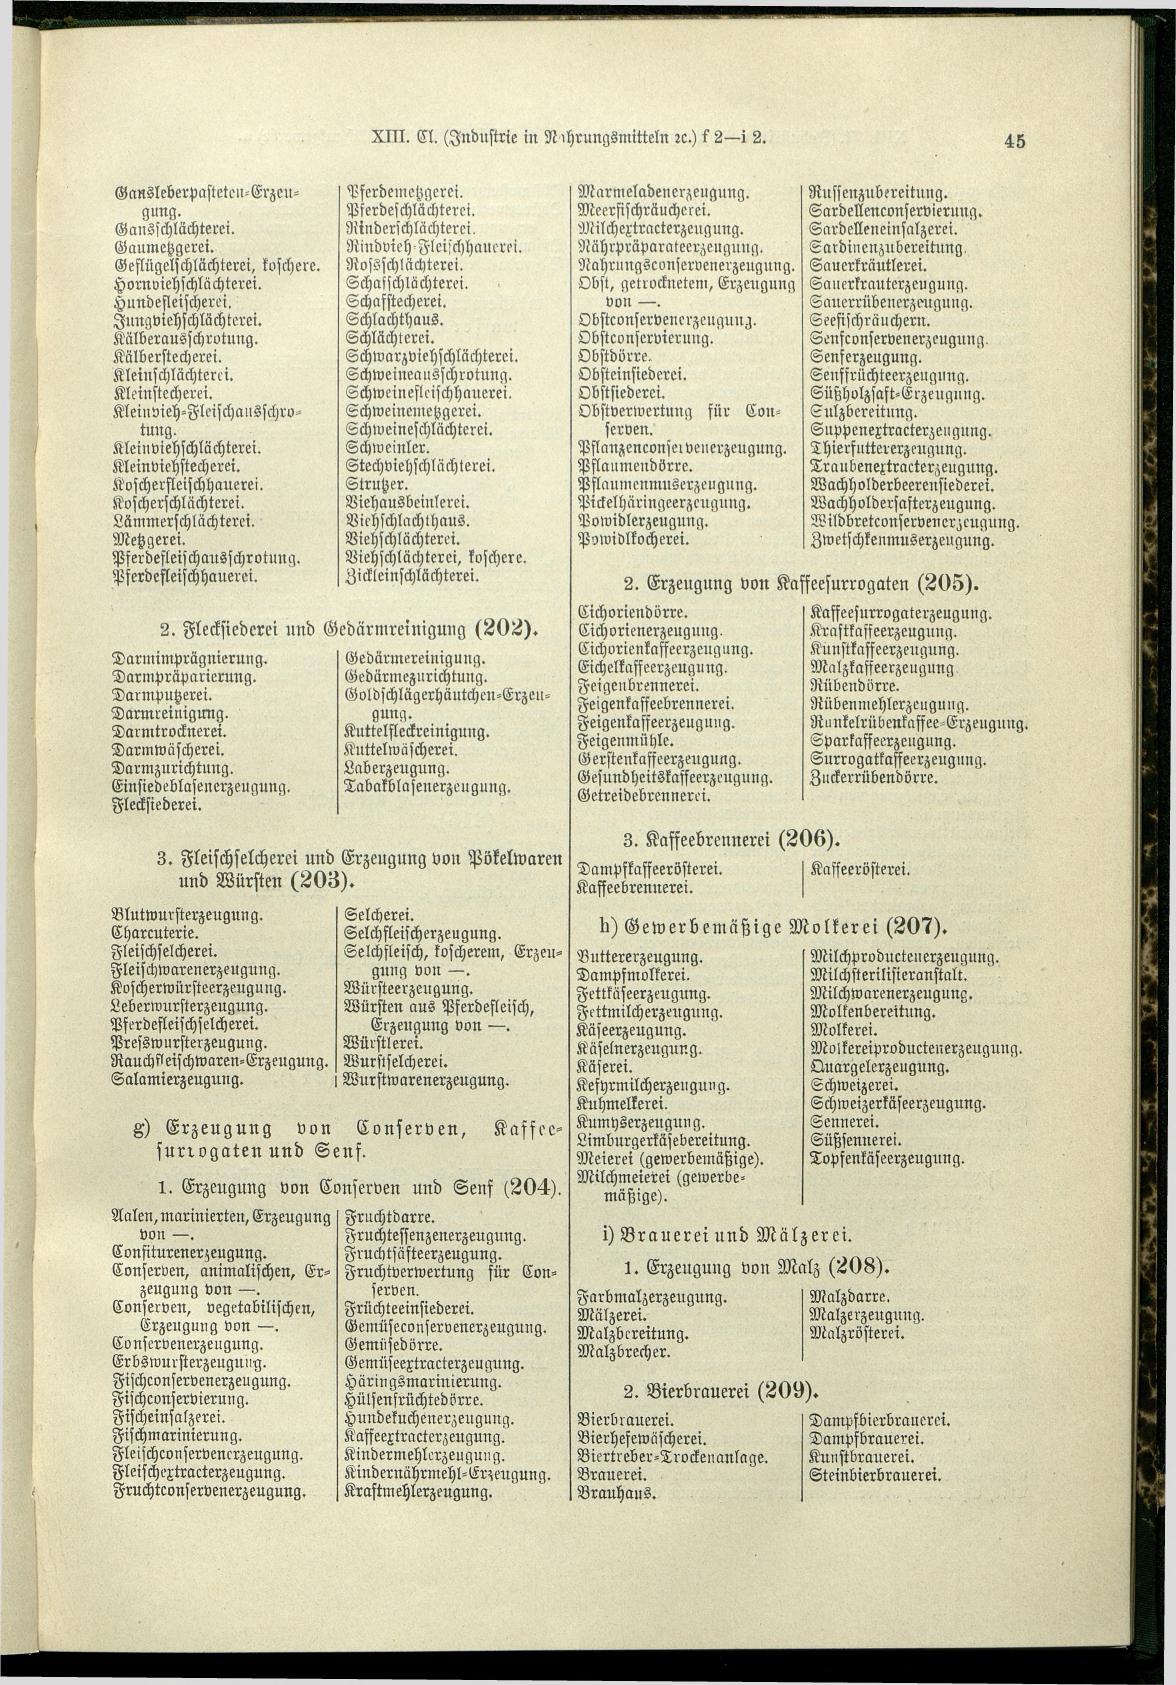 Verzeichnis der Gewerbe der im Reichsrathe vertretenen Königreiche und Länder 1900 - Page 49